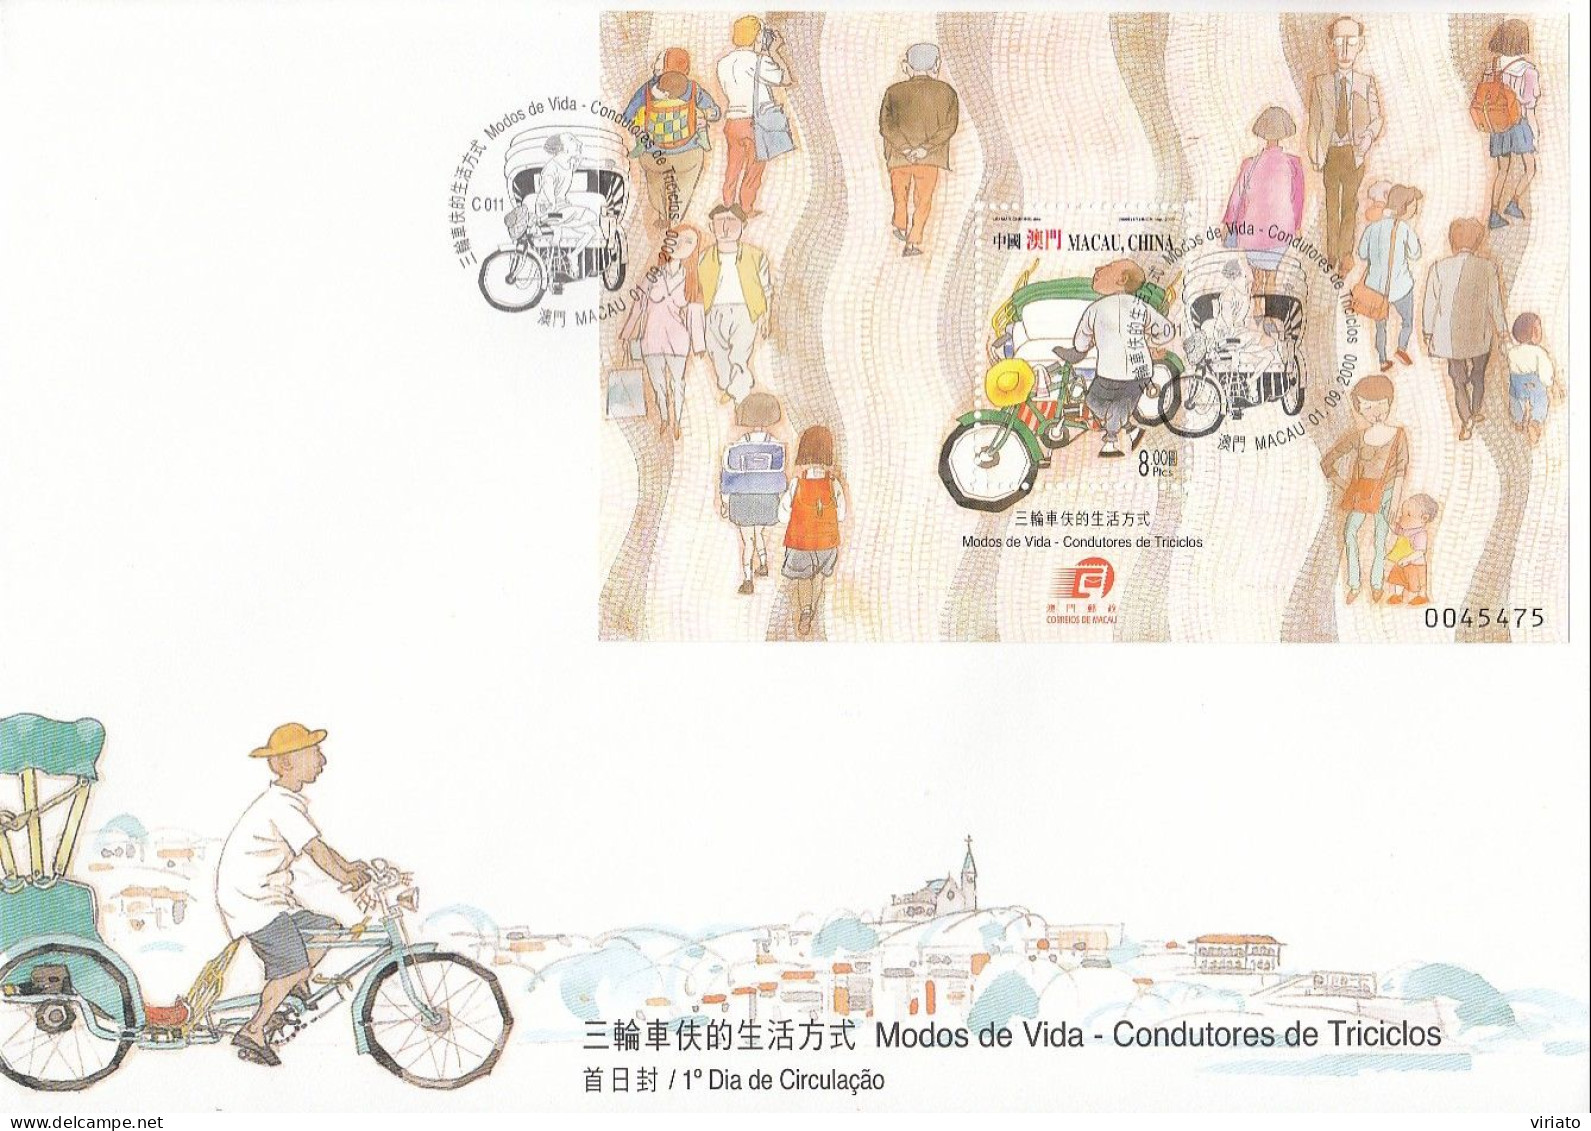 ENB009 - Modos De Vida - Condutores De Triciclos - 01.09.2000 - FDC